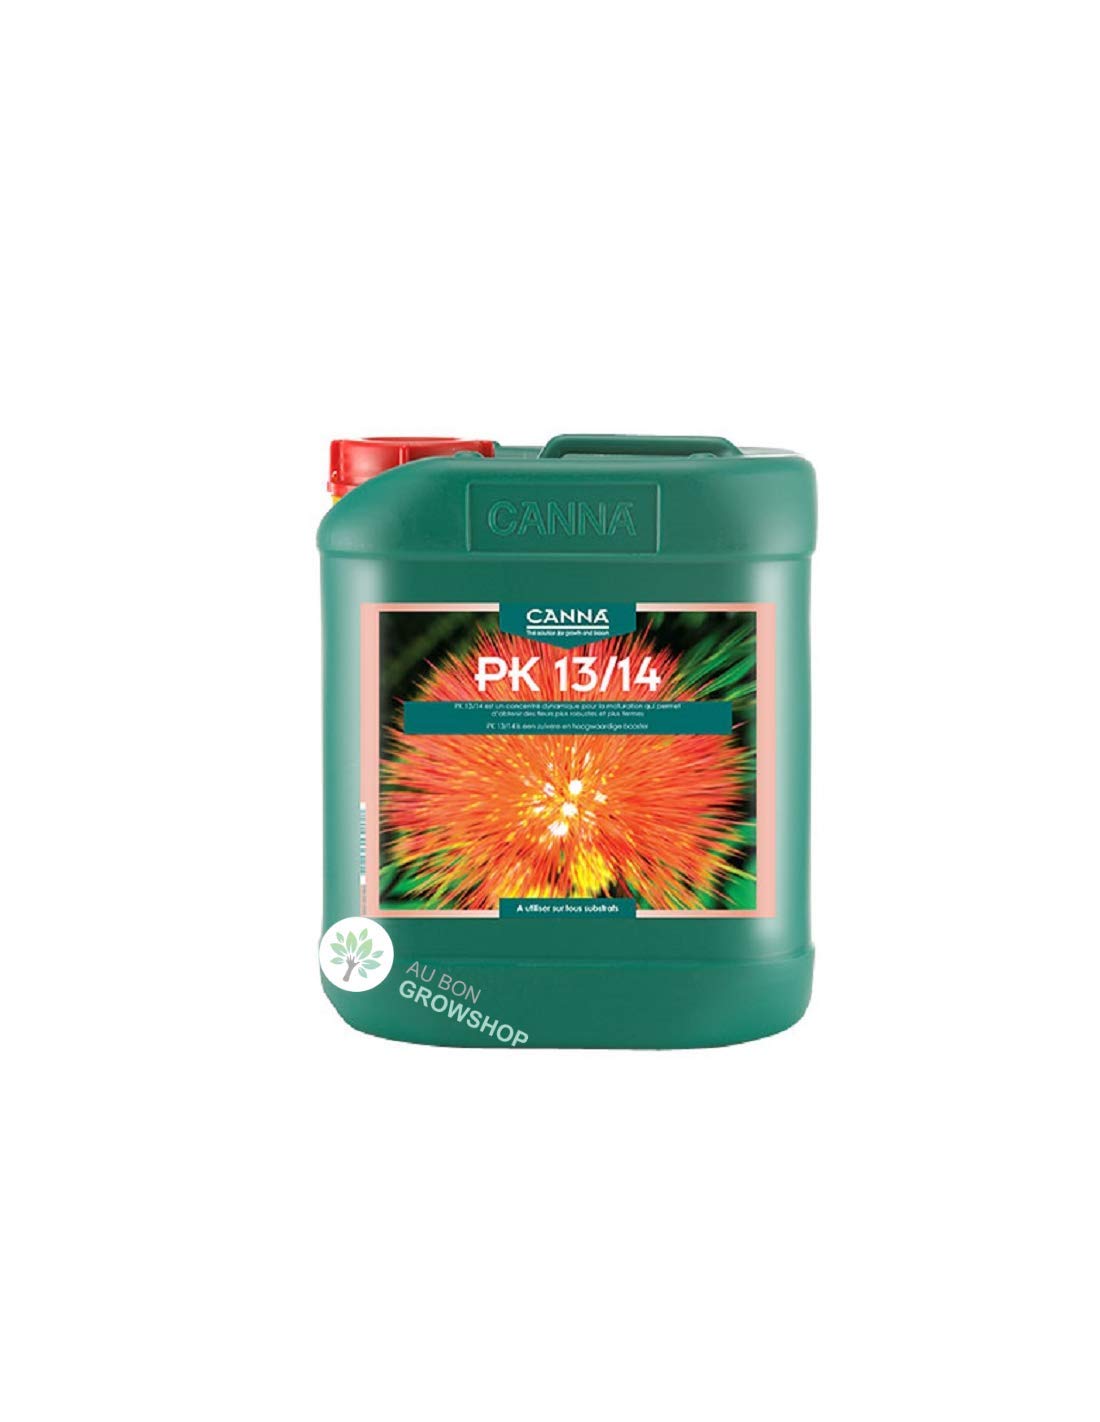 CANNA PK 13/14-5 Liter (nur Amazon)